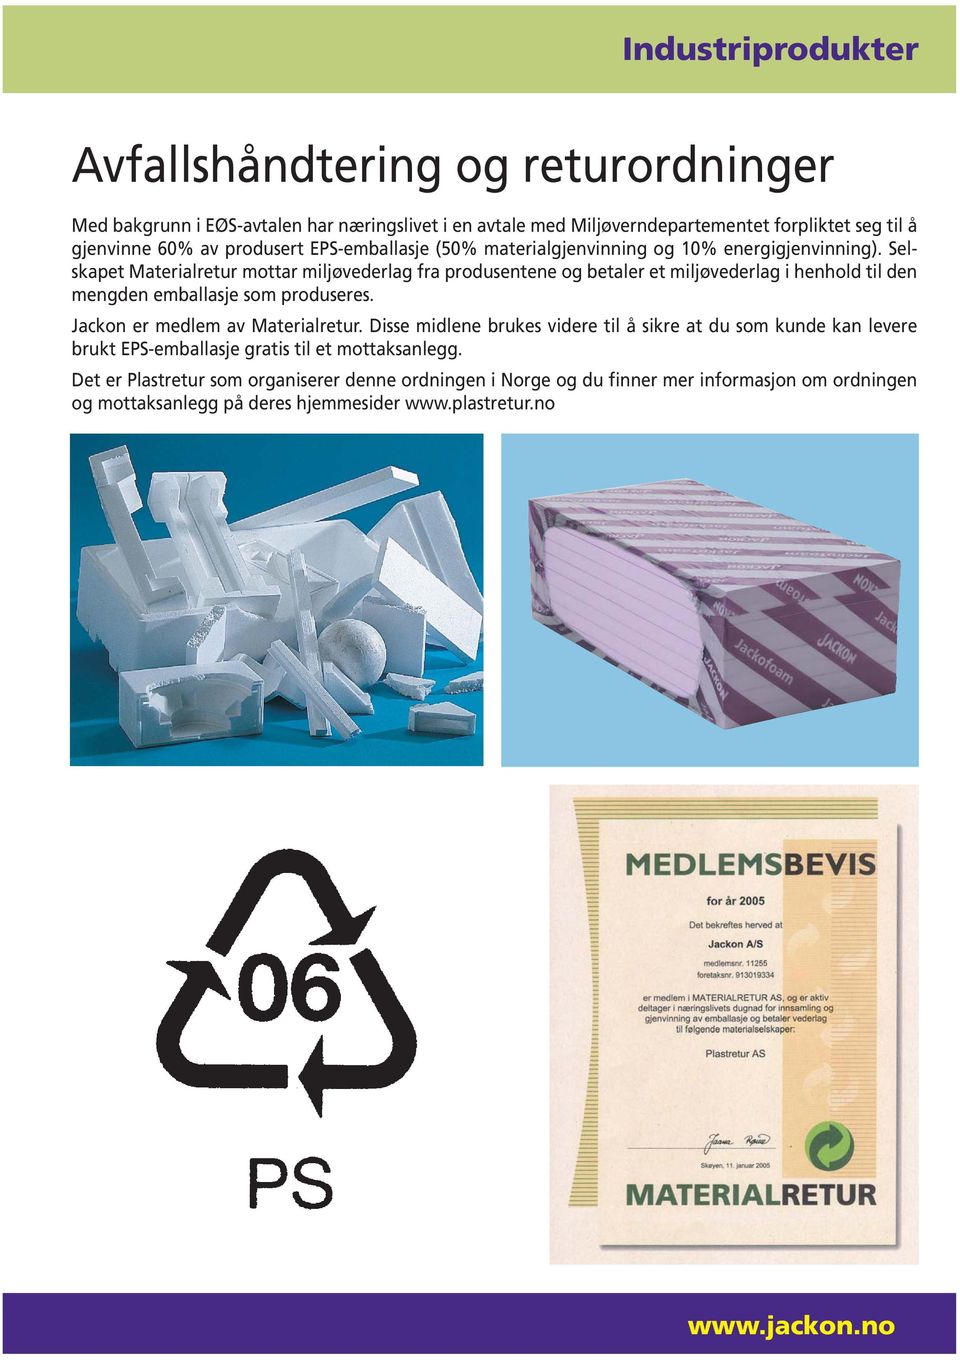 Selskapet Materialretur mottar miljøvederlag fra produsentene og betaler et miljøvederlag i henhold til den mengden emballasje som produseres.